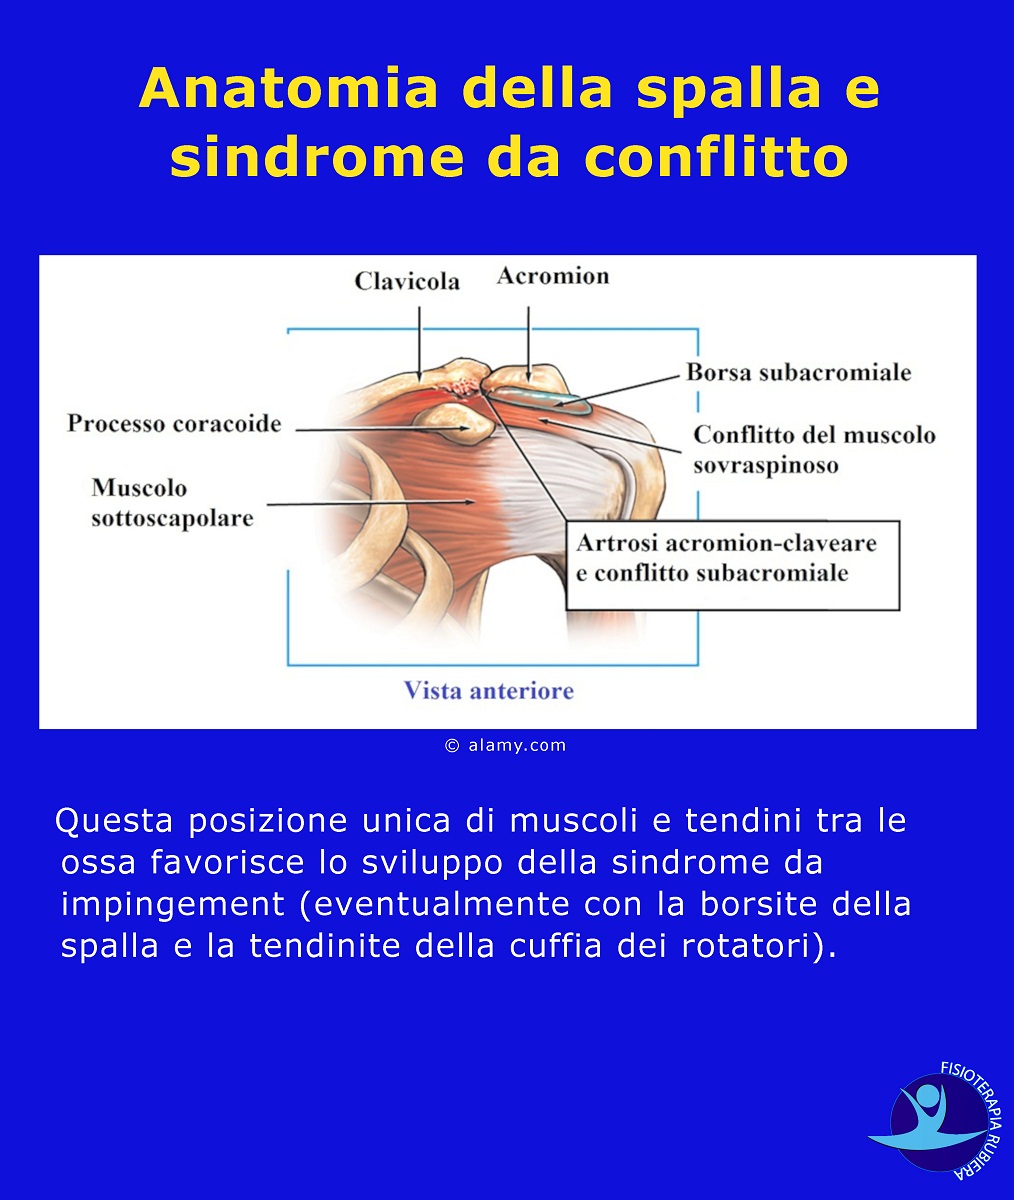 Anatomia della spalla e sindrome da conflitto